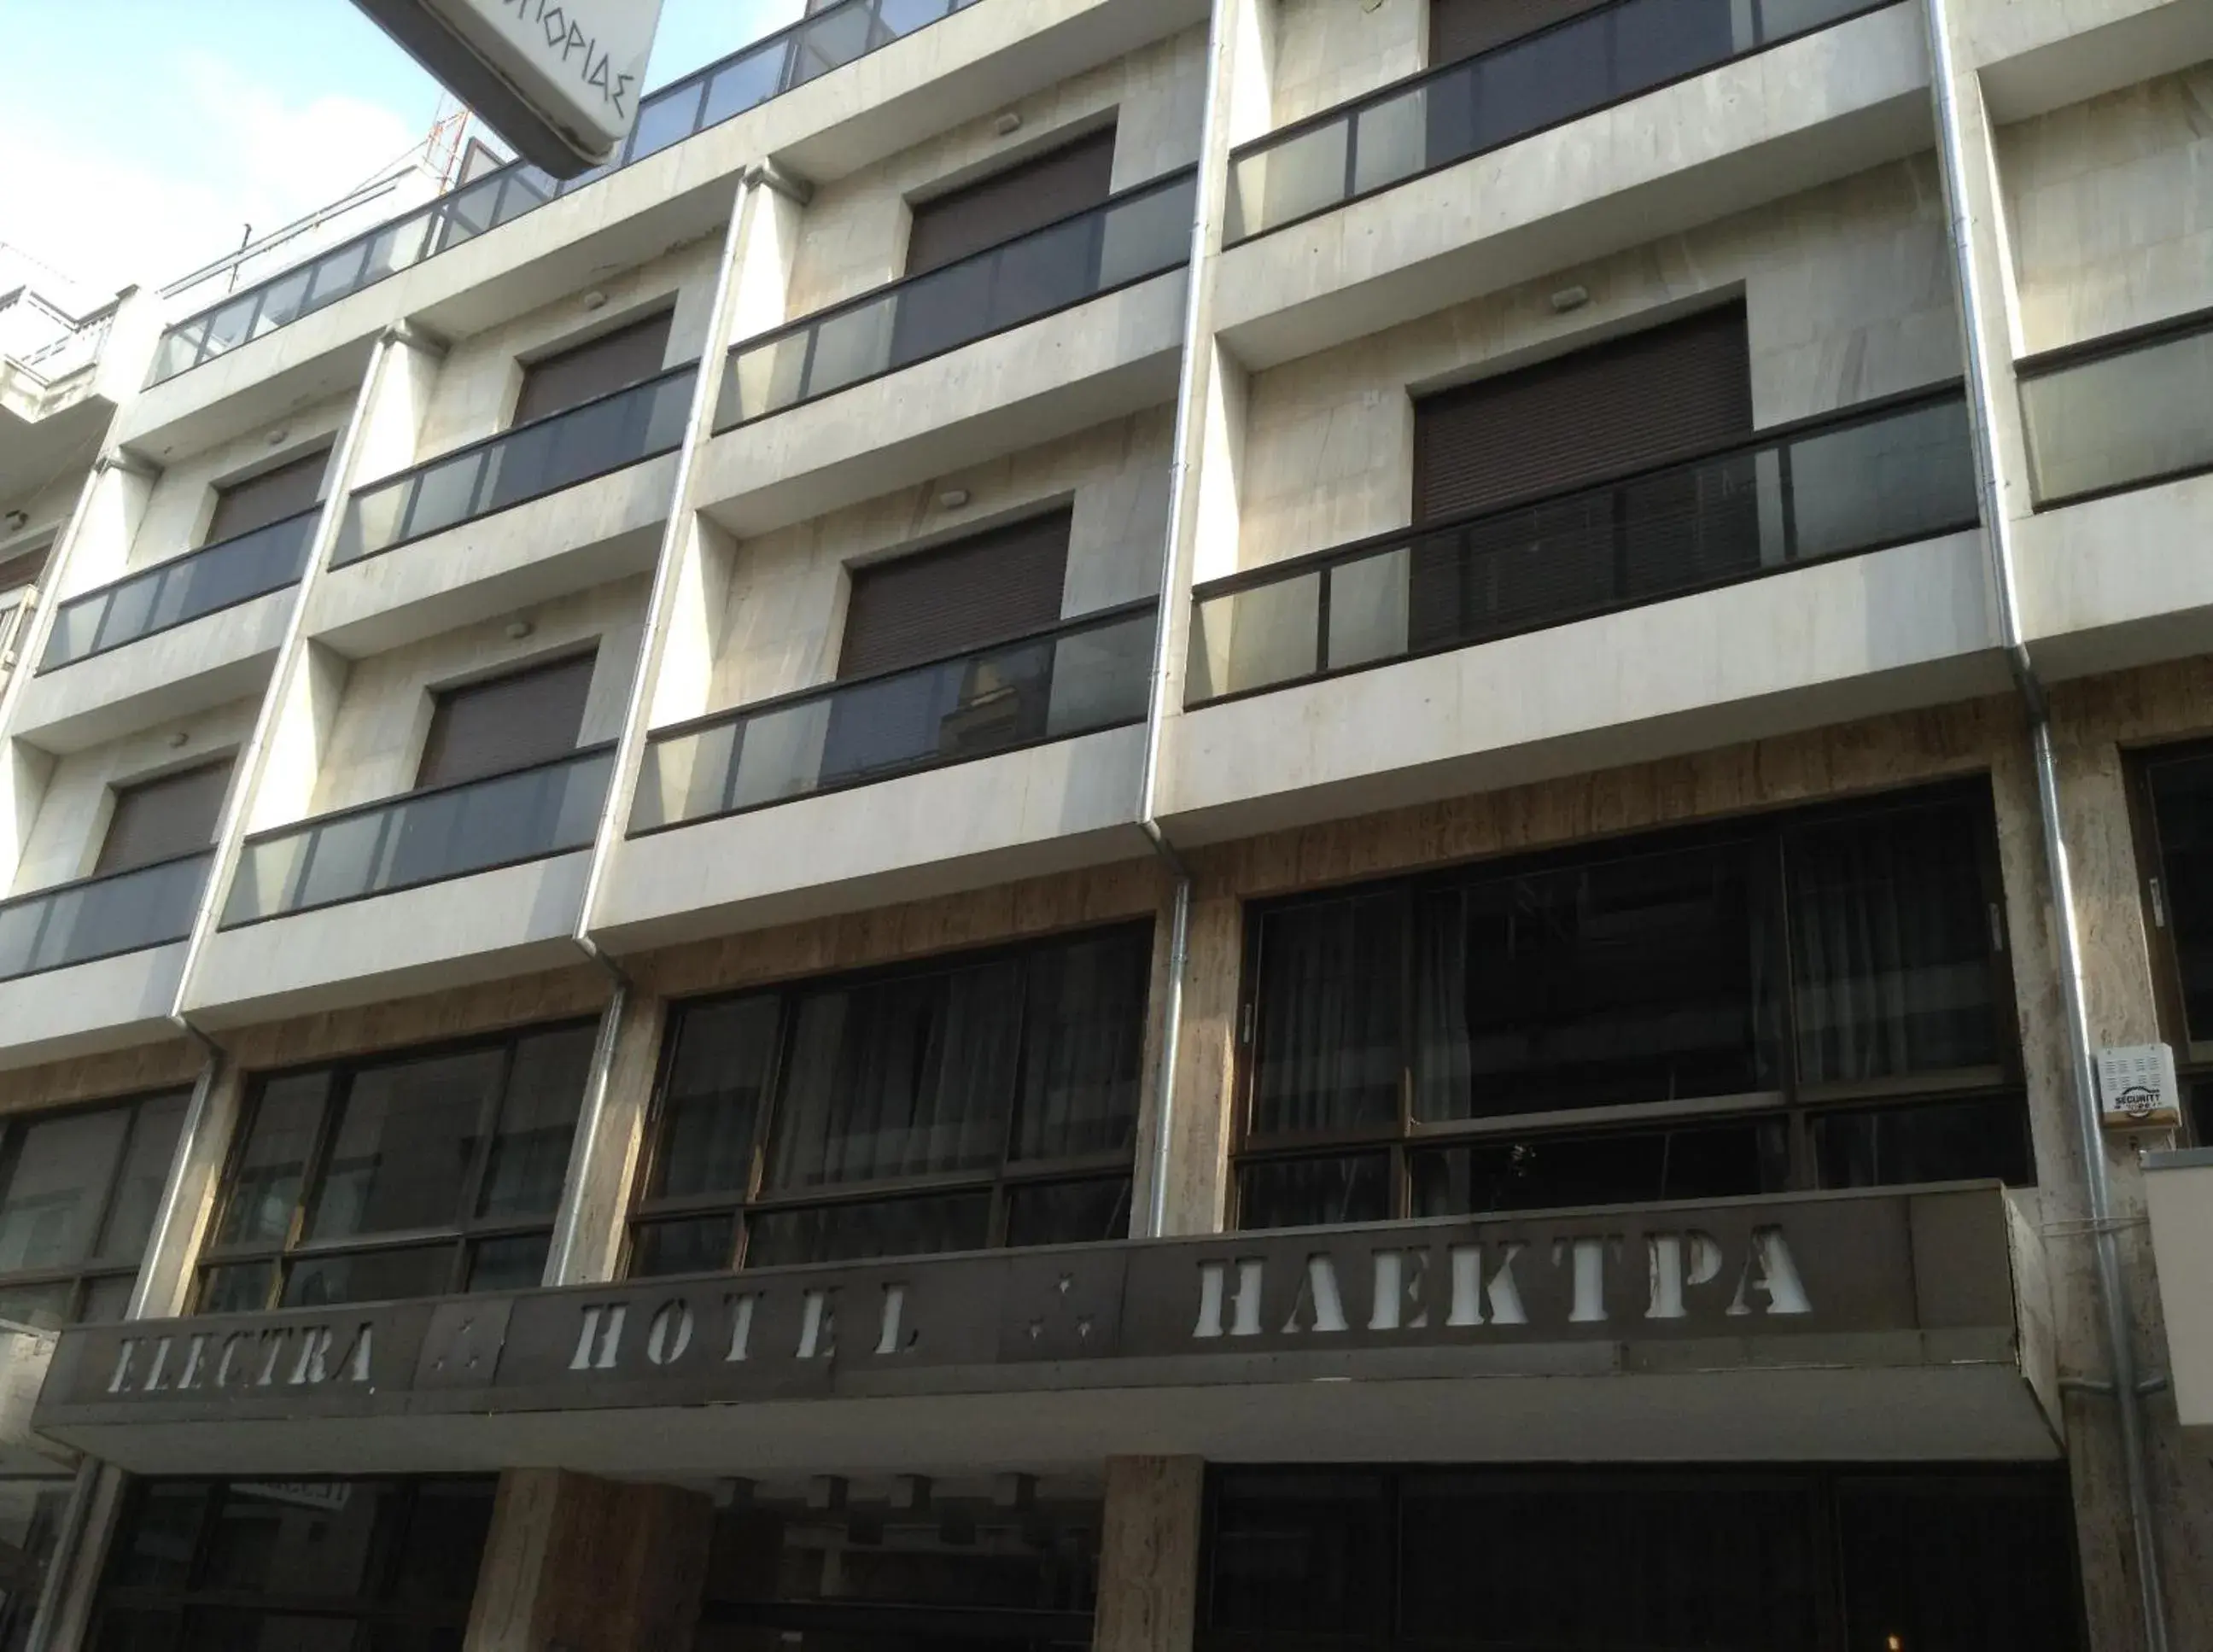 Facade/entrance, Property Building in Hotel Electra